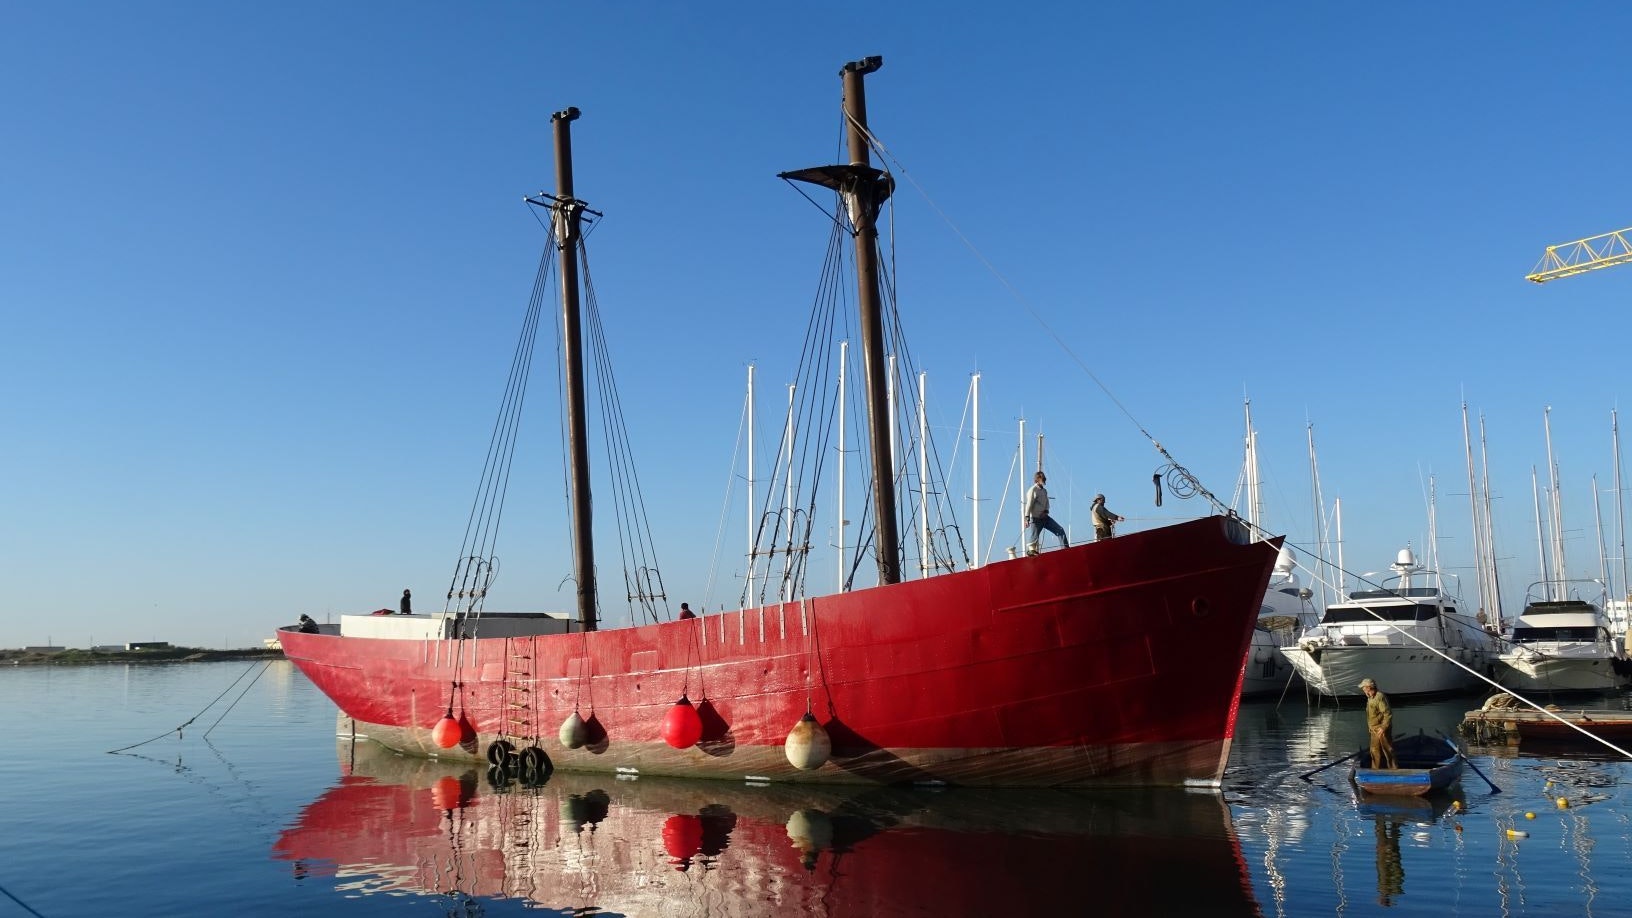 Alles neu: Die Restaurierung des ehemaligen Segelschiffes „Meta“ im Hafen von Sizilien läuft auf Hochtouren. Foto: Kravina